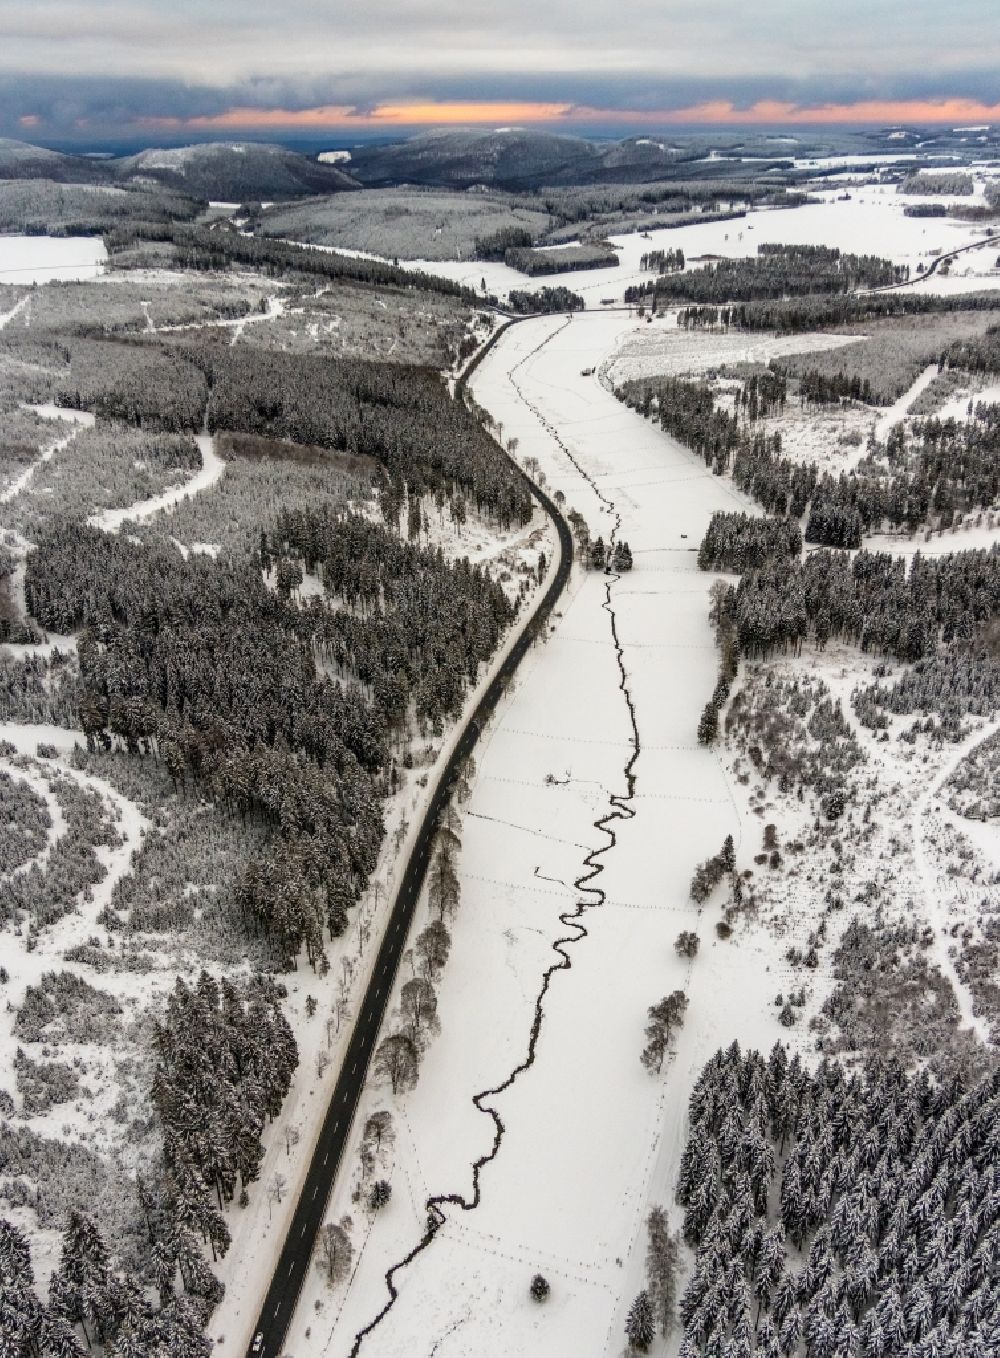 Winterberg von oben - Winterluftbild Serpentinenförmiger Kurvenverlauf des Baches - Flüsschens Ruhr bei Winterberg im Bundesland Nordrhein-Westfalen, Deutschland